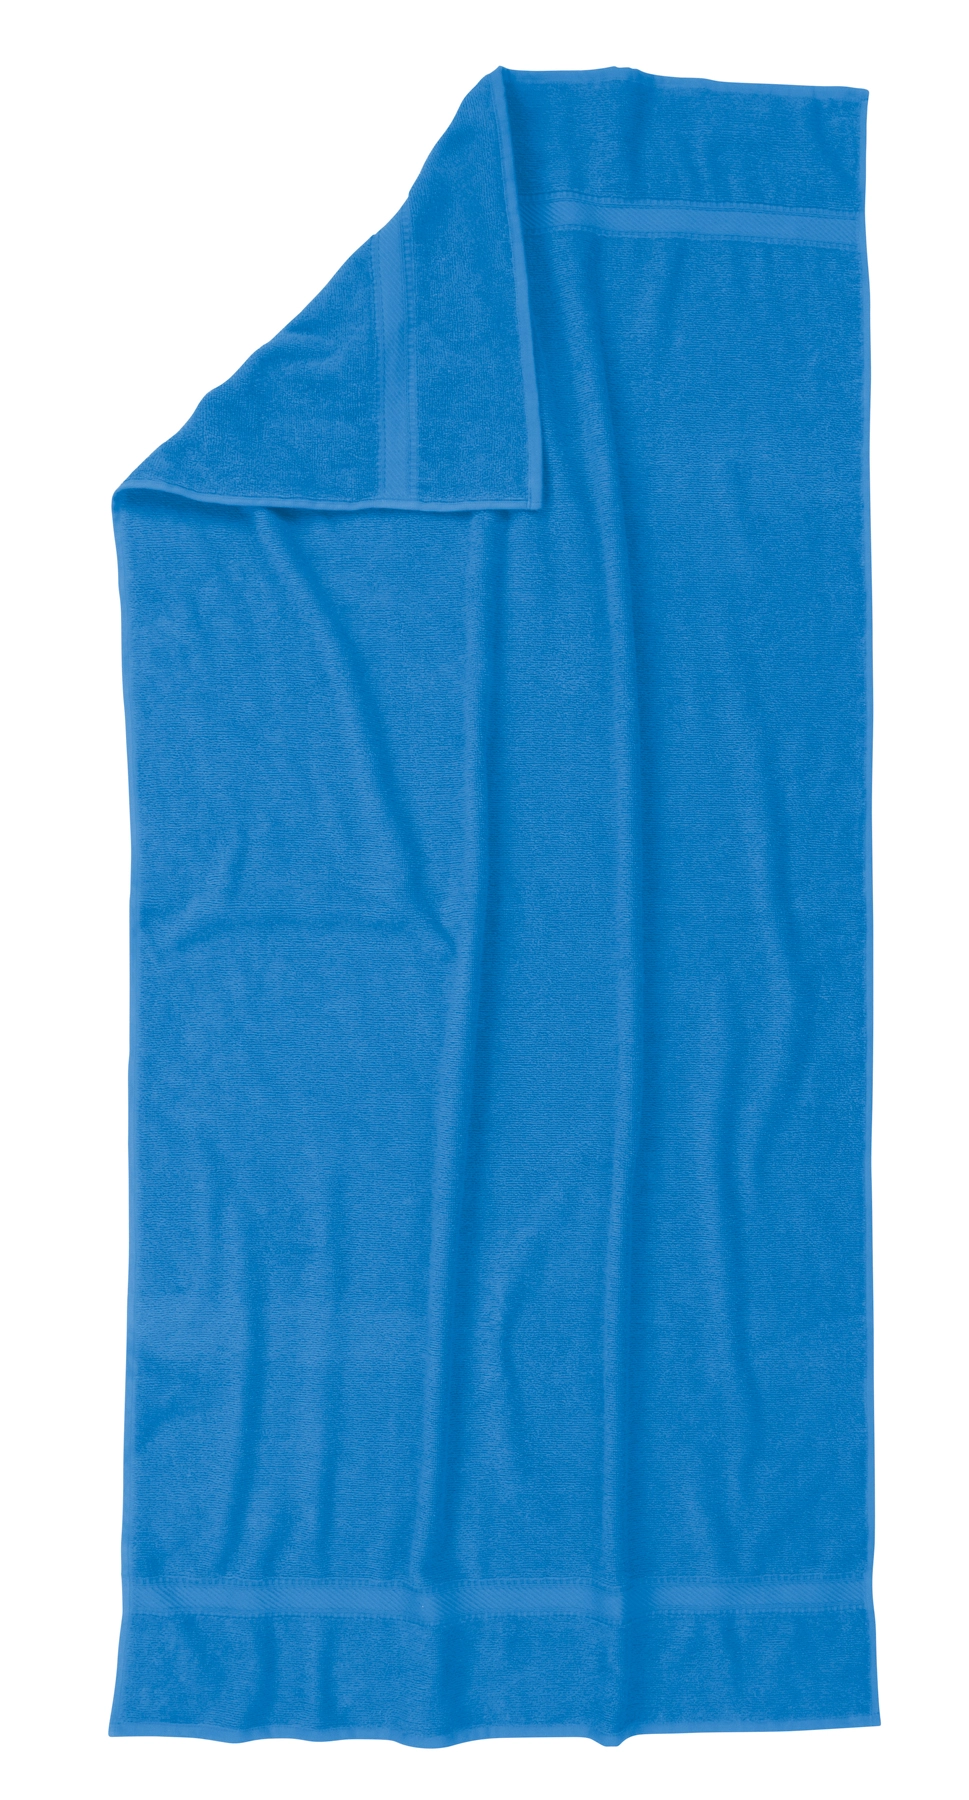 Ręcznik plażowy SUMMER TRIP, niebieski 56-0605112